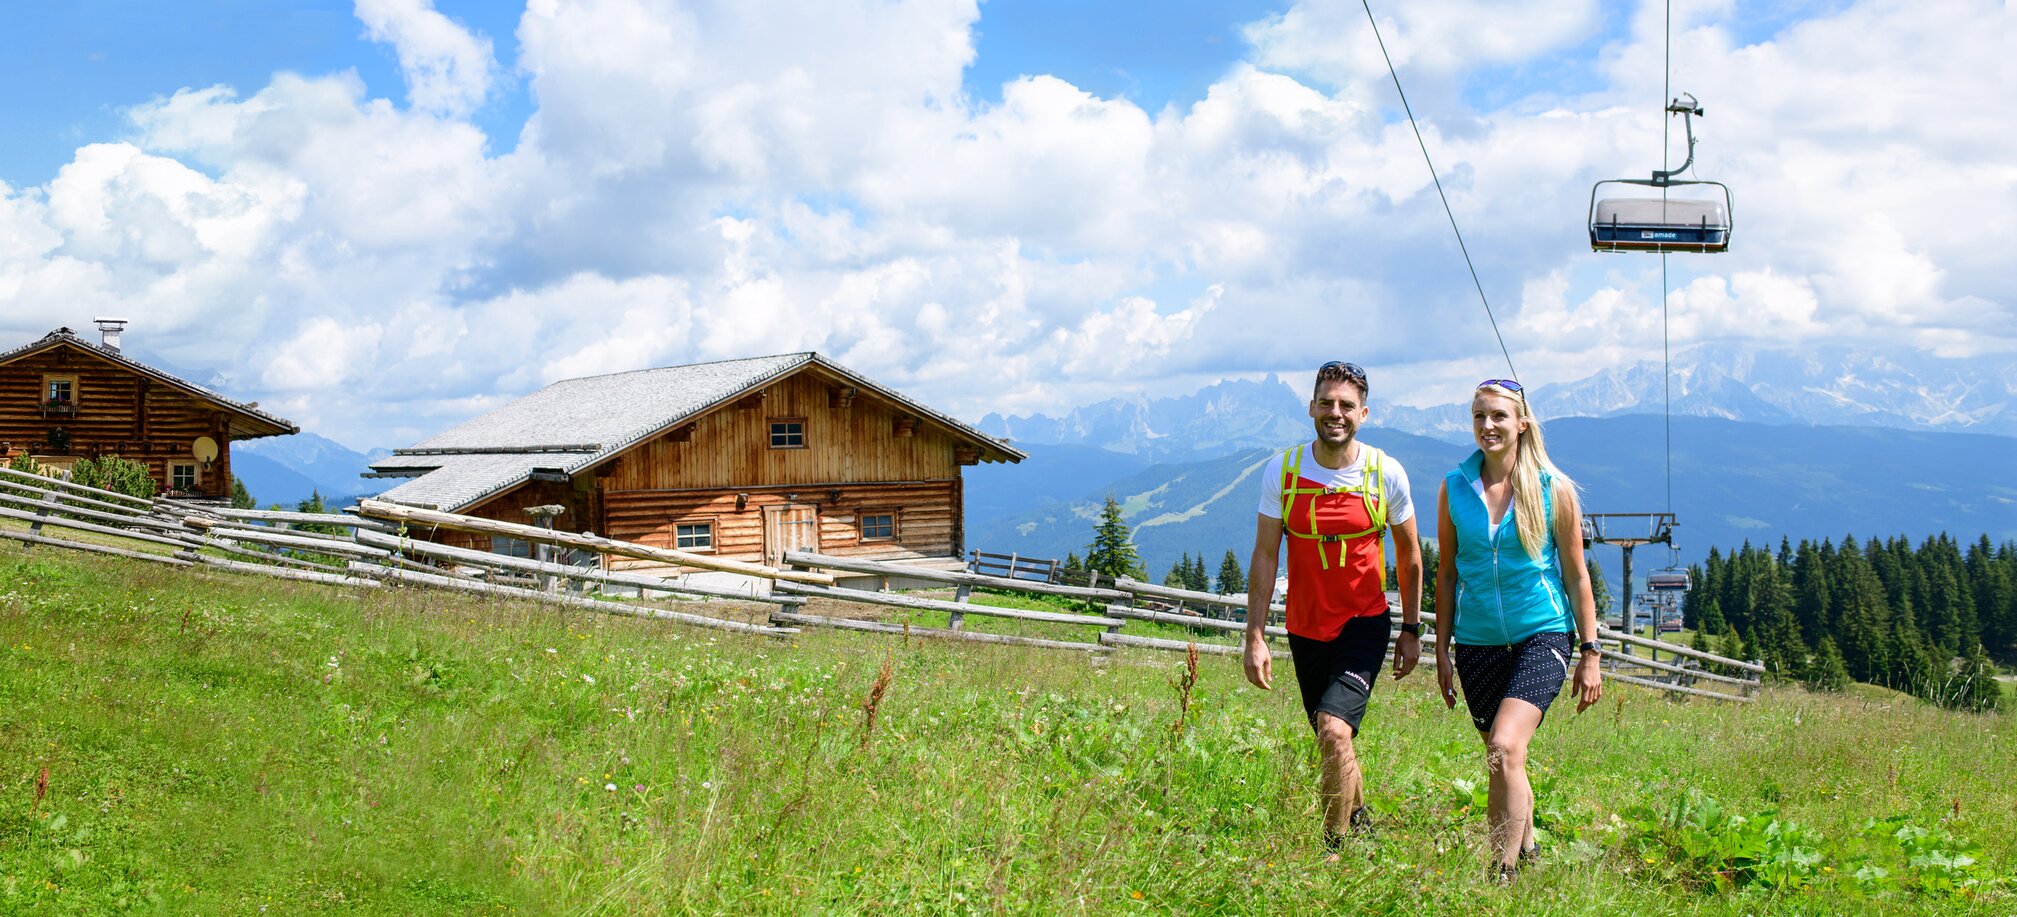 Wandern, Spazieren und Mountainbiken im Sommer am Berg dank Sommerliftln in Ski amadé